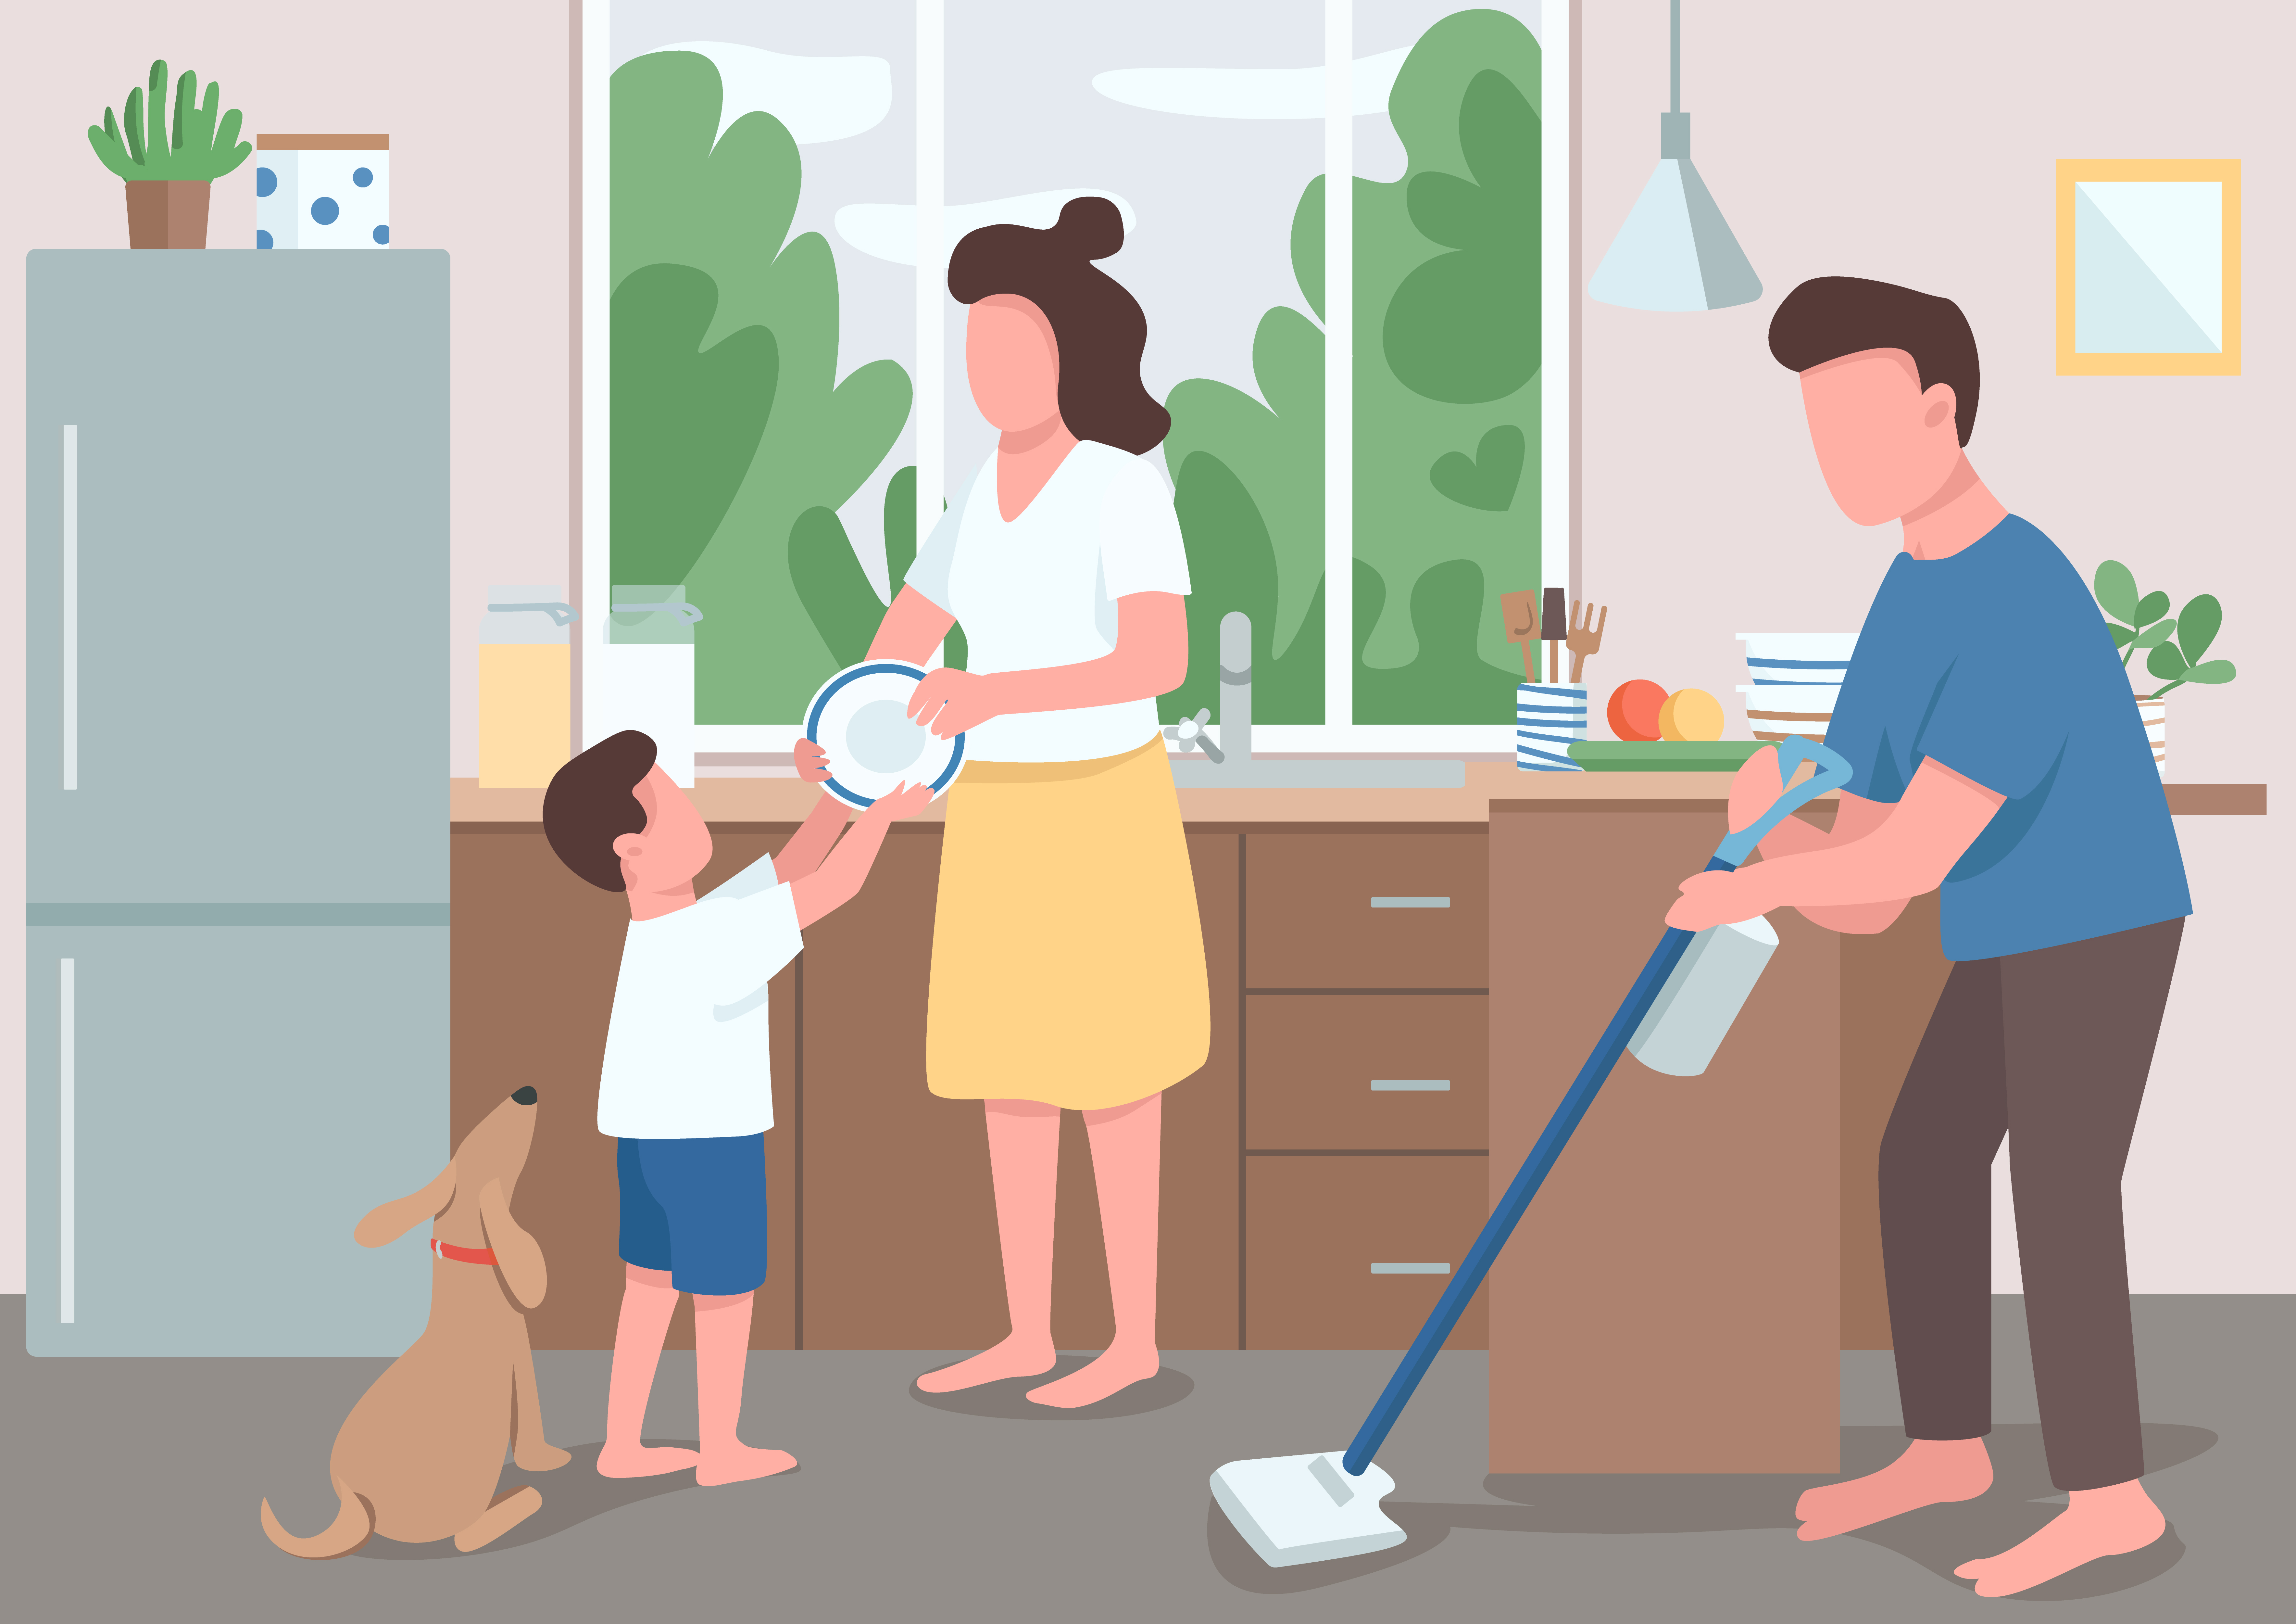 Убираться в родительском доме. Семья прибирается. Иллюстрации семейная уборка. Помогать маме по дому. Семейная уборка рисунок.